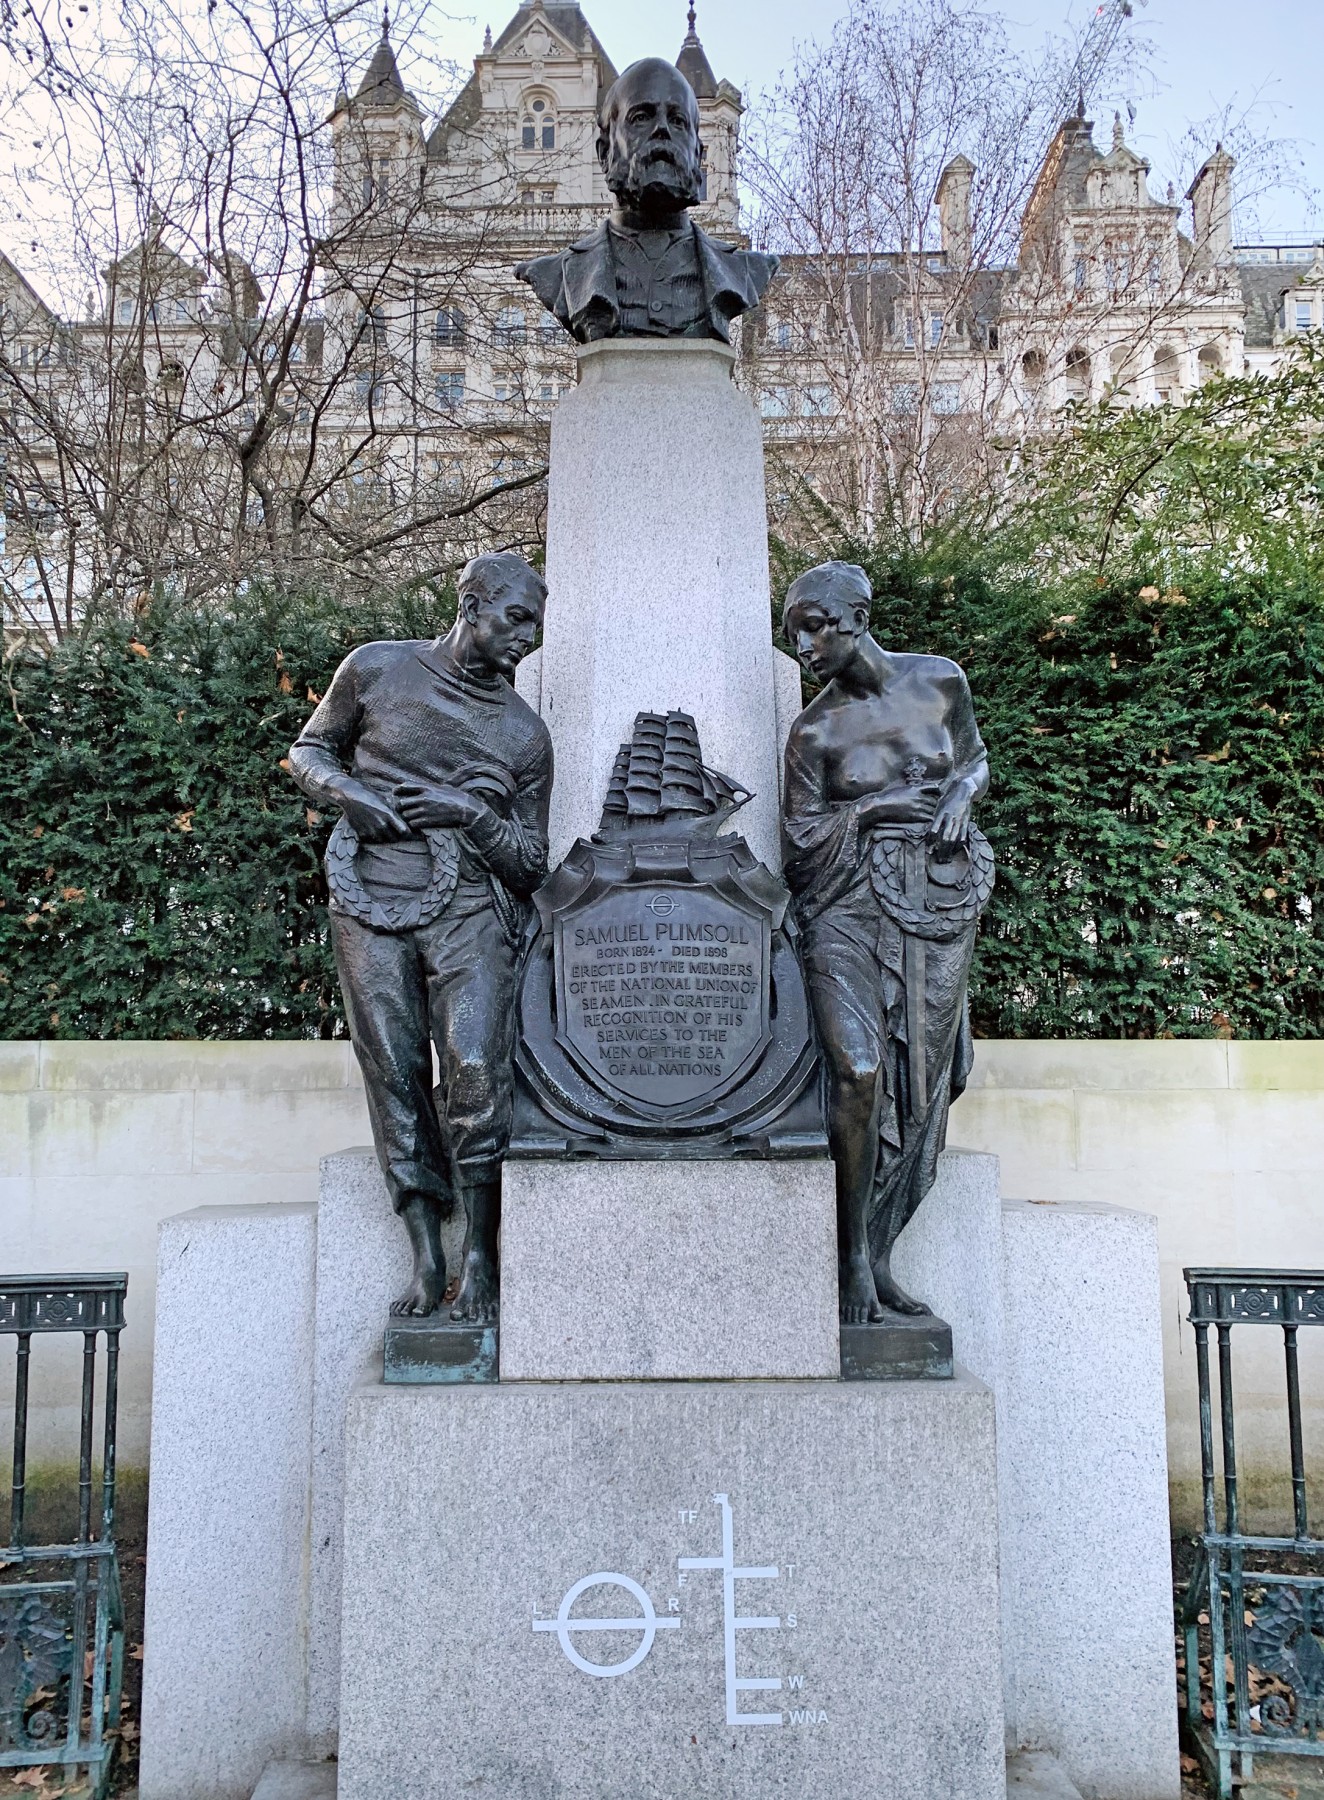 Μνημείο του Σάμουελ Πλιμσολ στους κήπους του Γουάιτχολ, στο Λονδίνο